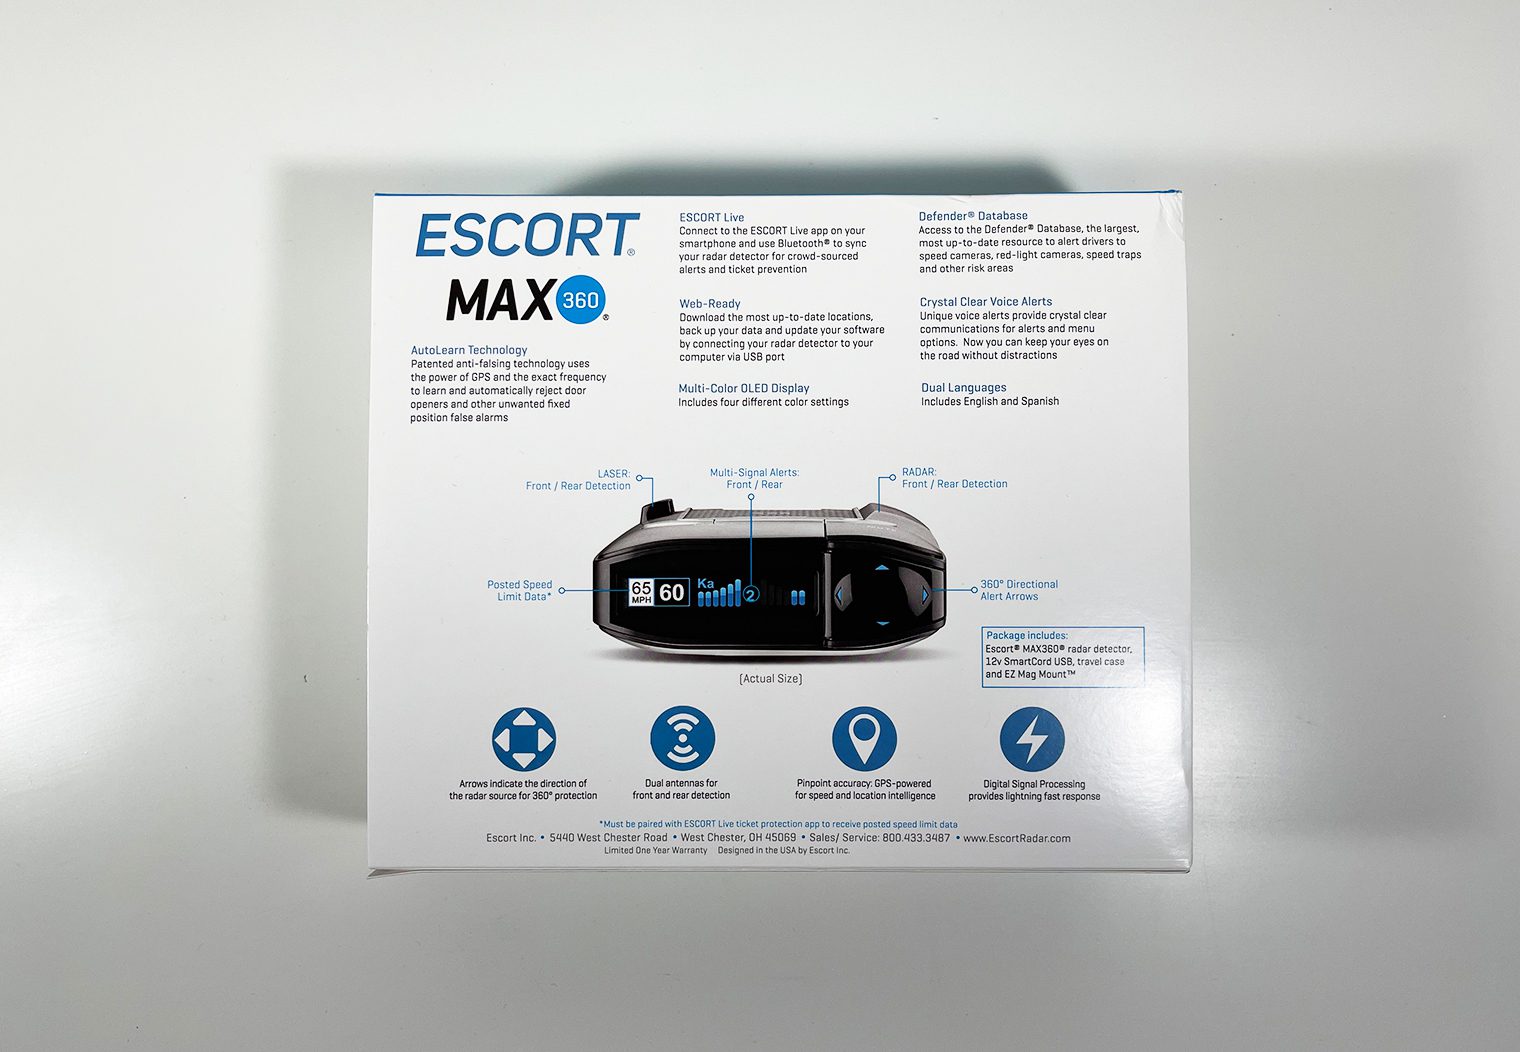 Escort MAX 360 in the box rear